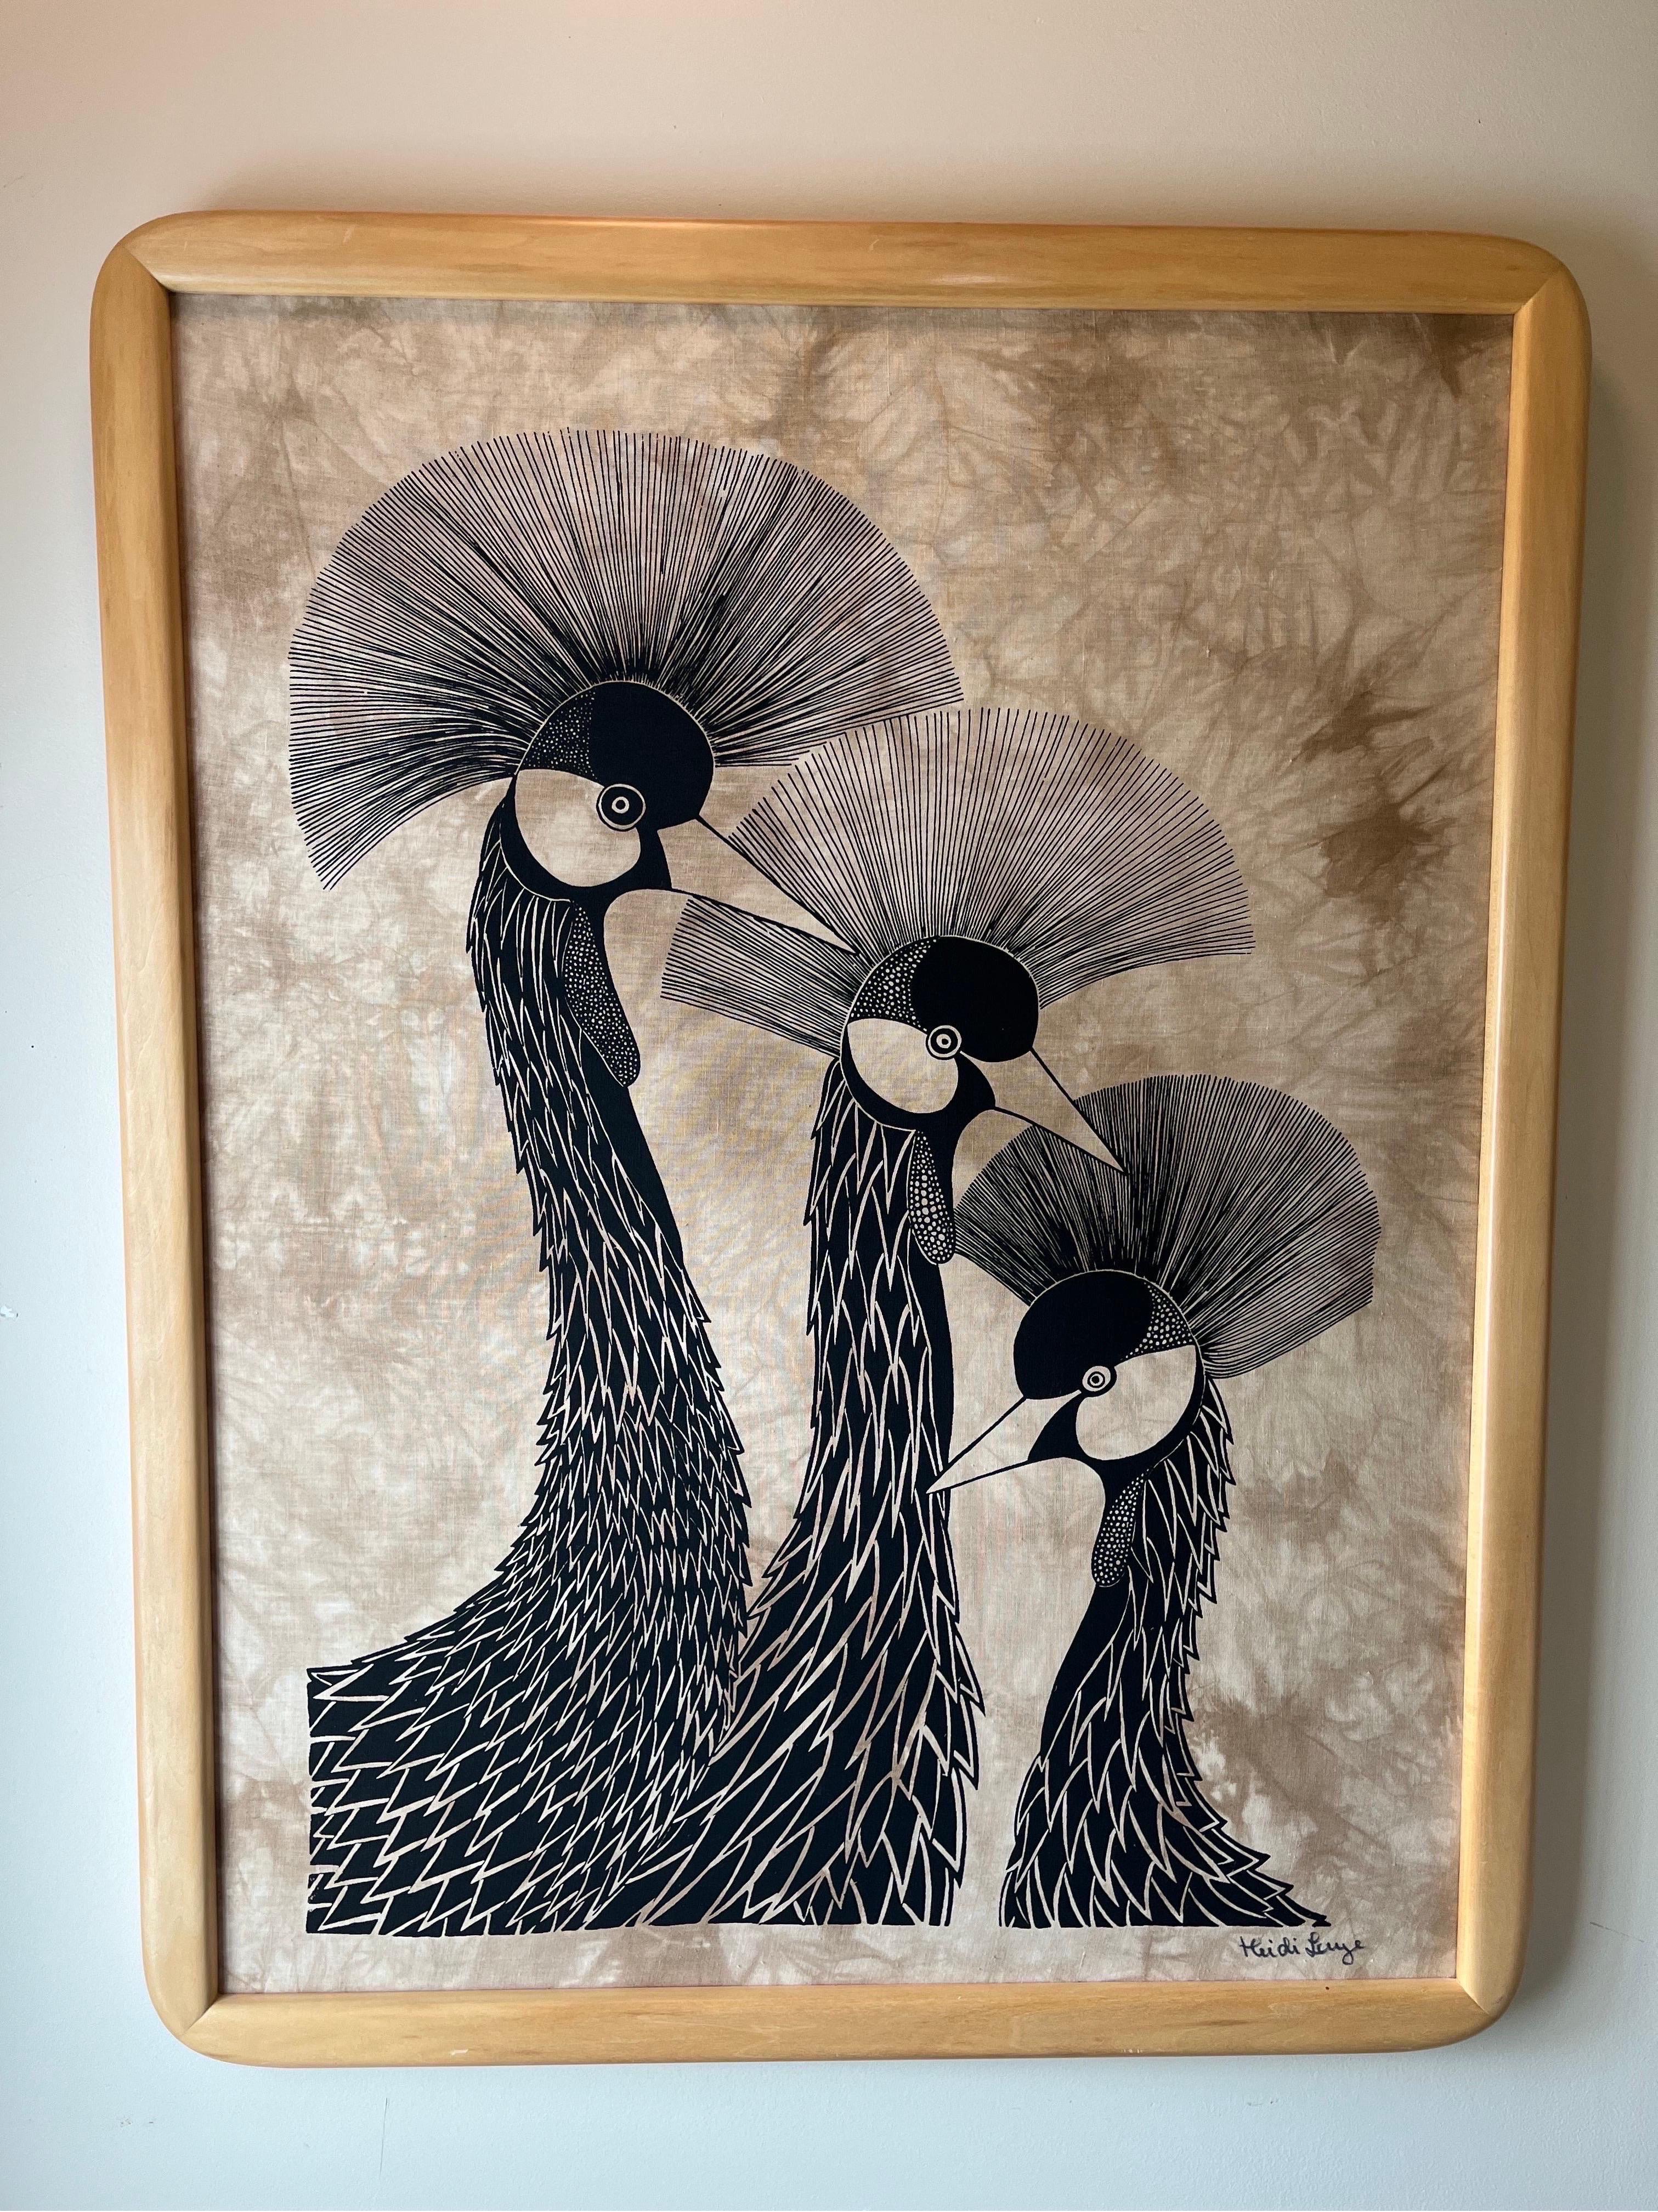 Wunderschöne Batik, die Folgendes darstellt  3 stilisierte preenende Kraniche der schwedischen Künstlerin Heidi Lange. Großartige Optik und Kontrast.
Bordsteinkante nach NYC/Philly $350